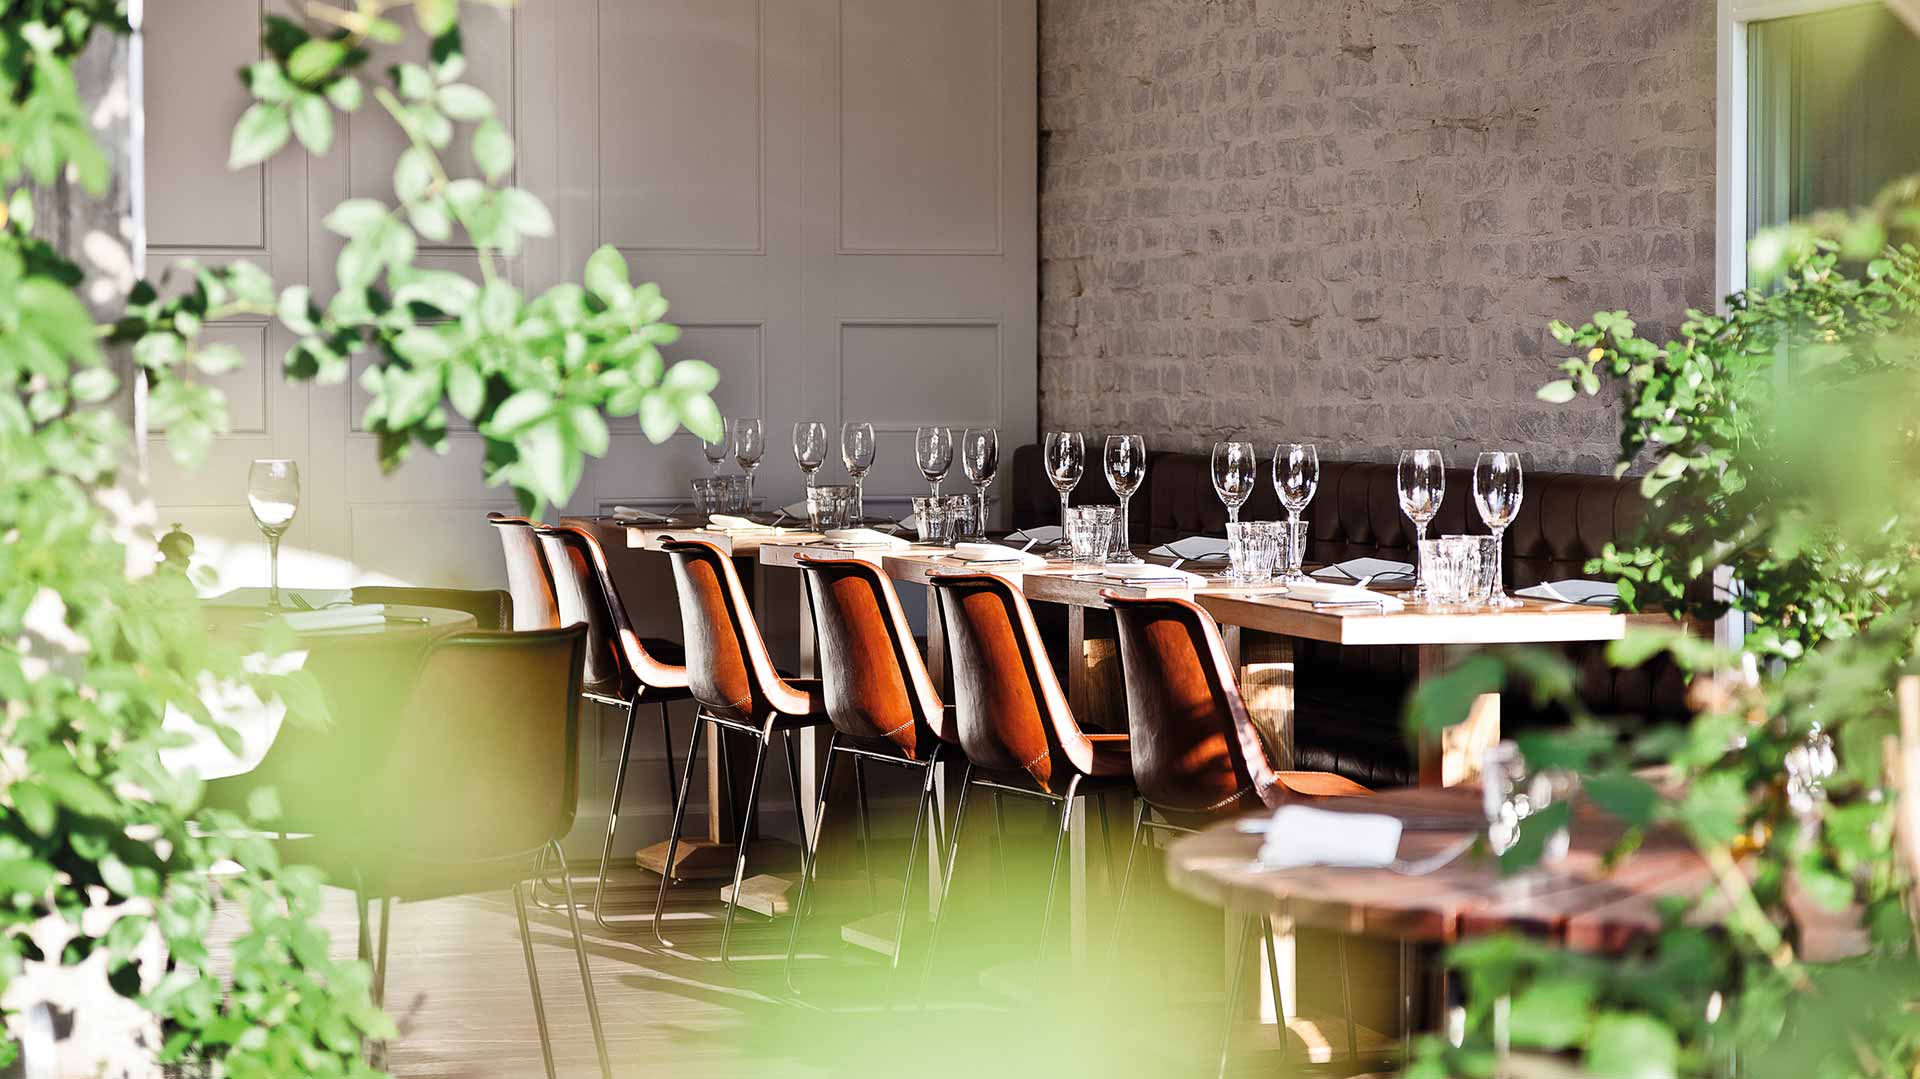 Spindler - Brasserie Restaurant Berlin Kreuzberg table